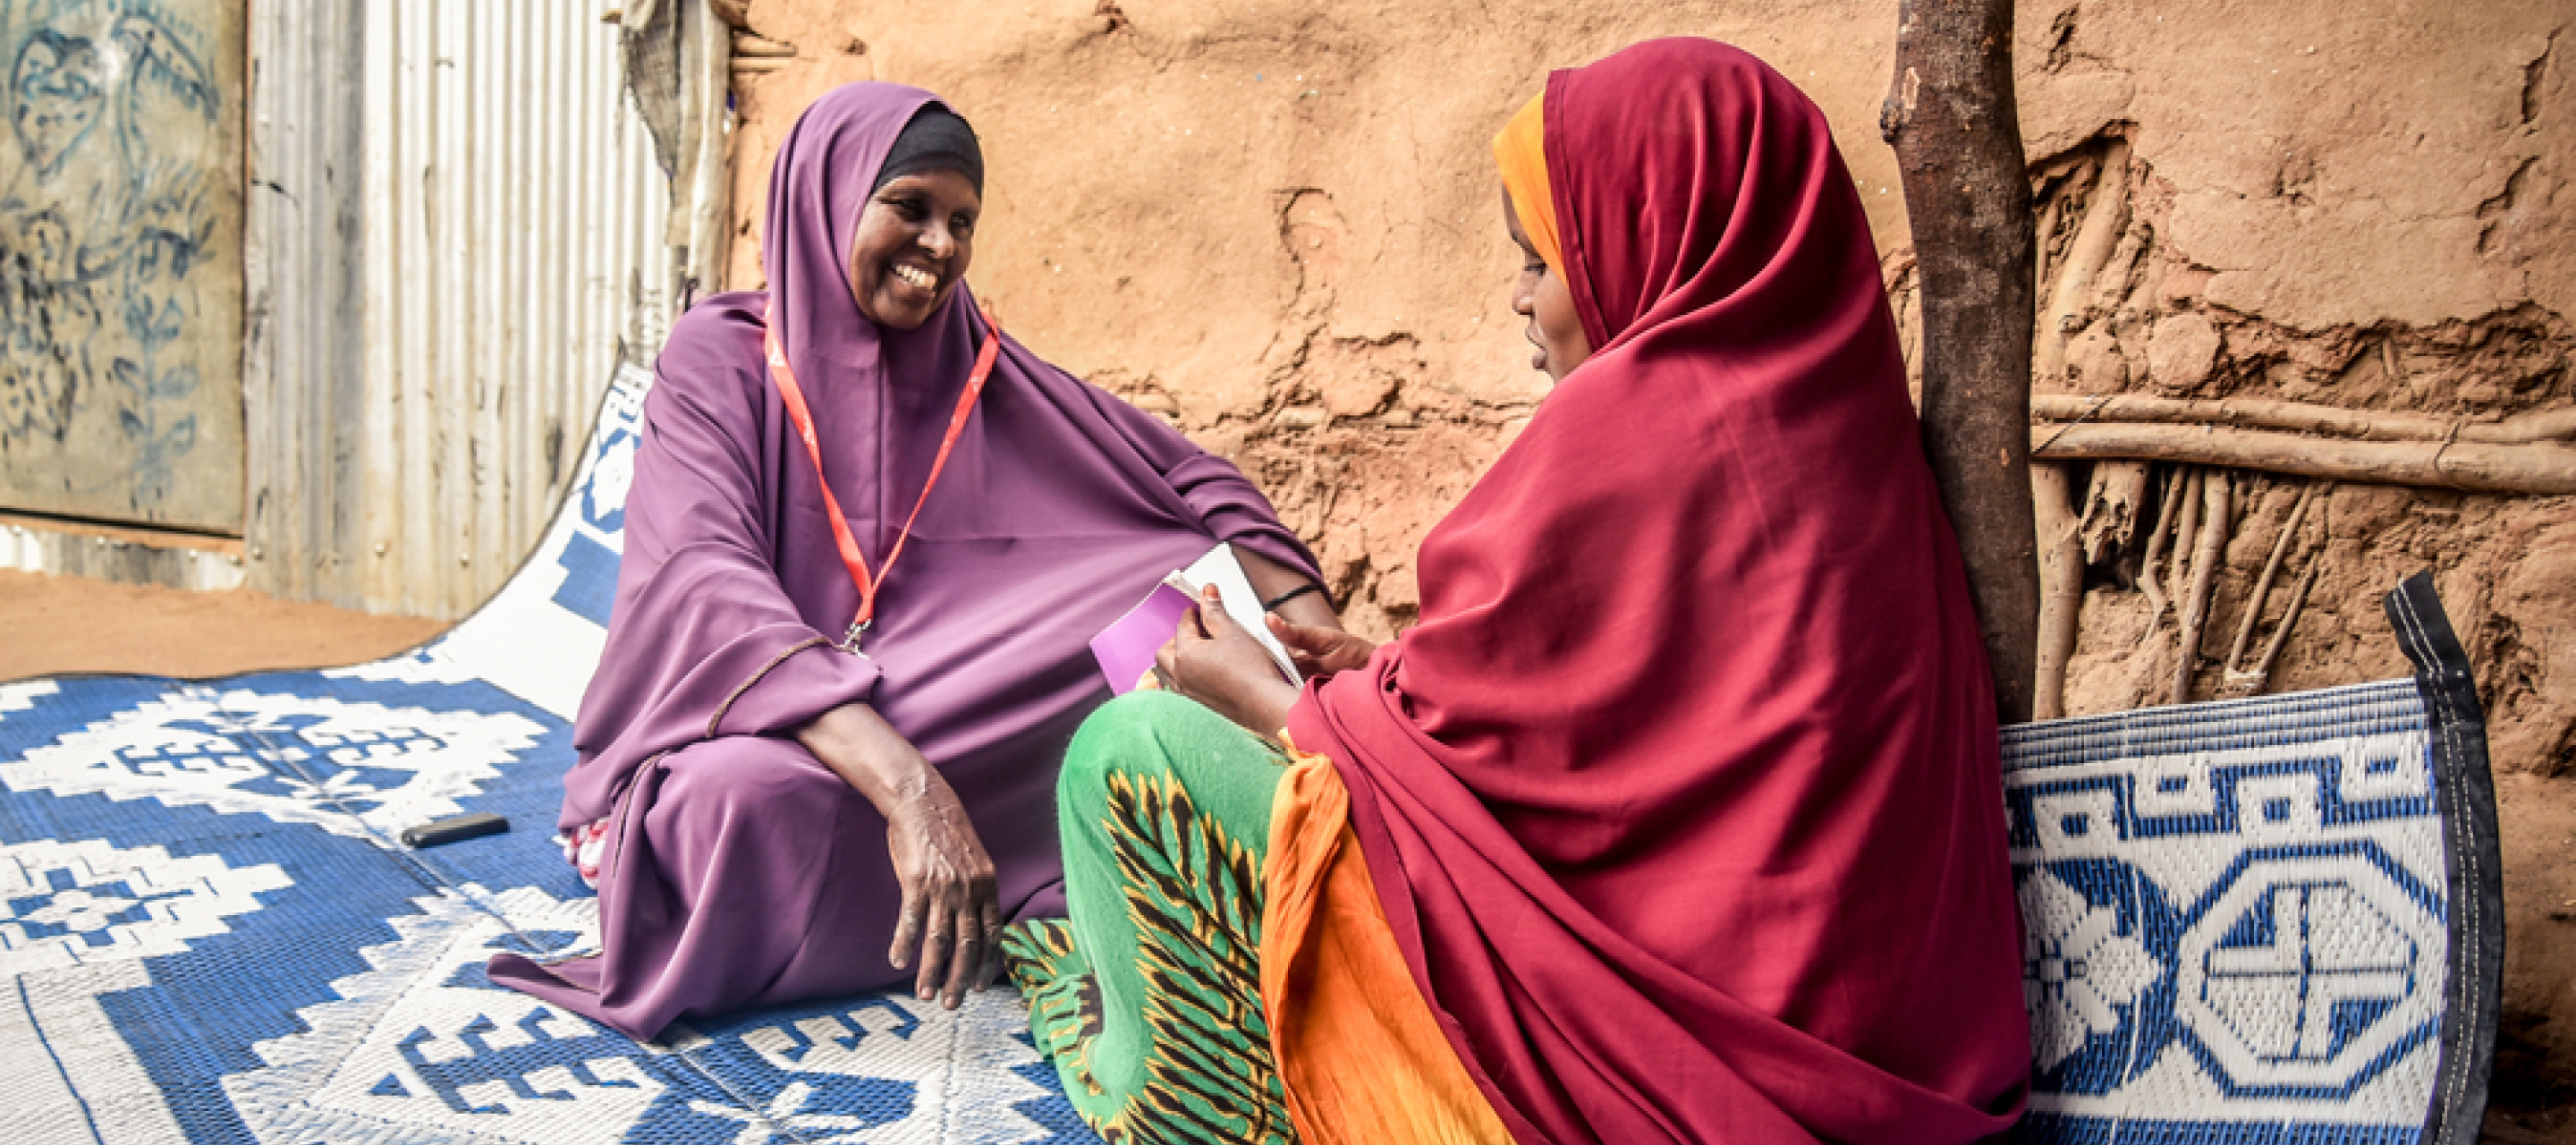 Geflüchtetencamp Kenia Gespräch zwei Frauen Gesundheitsfürsorge